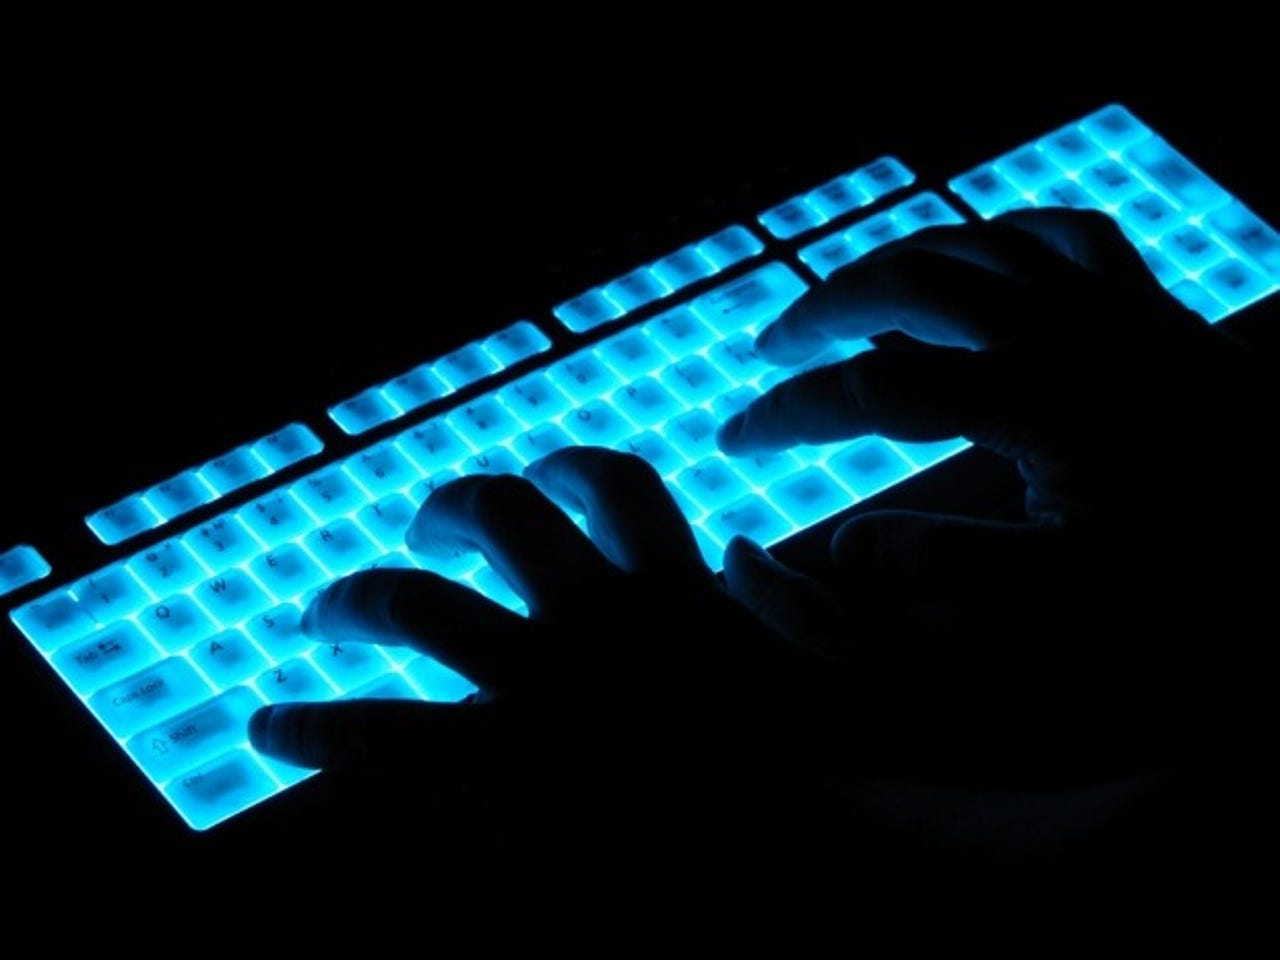 glowing-keyboard-hacker-security-620x465